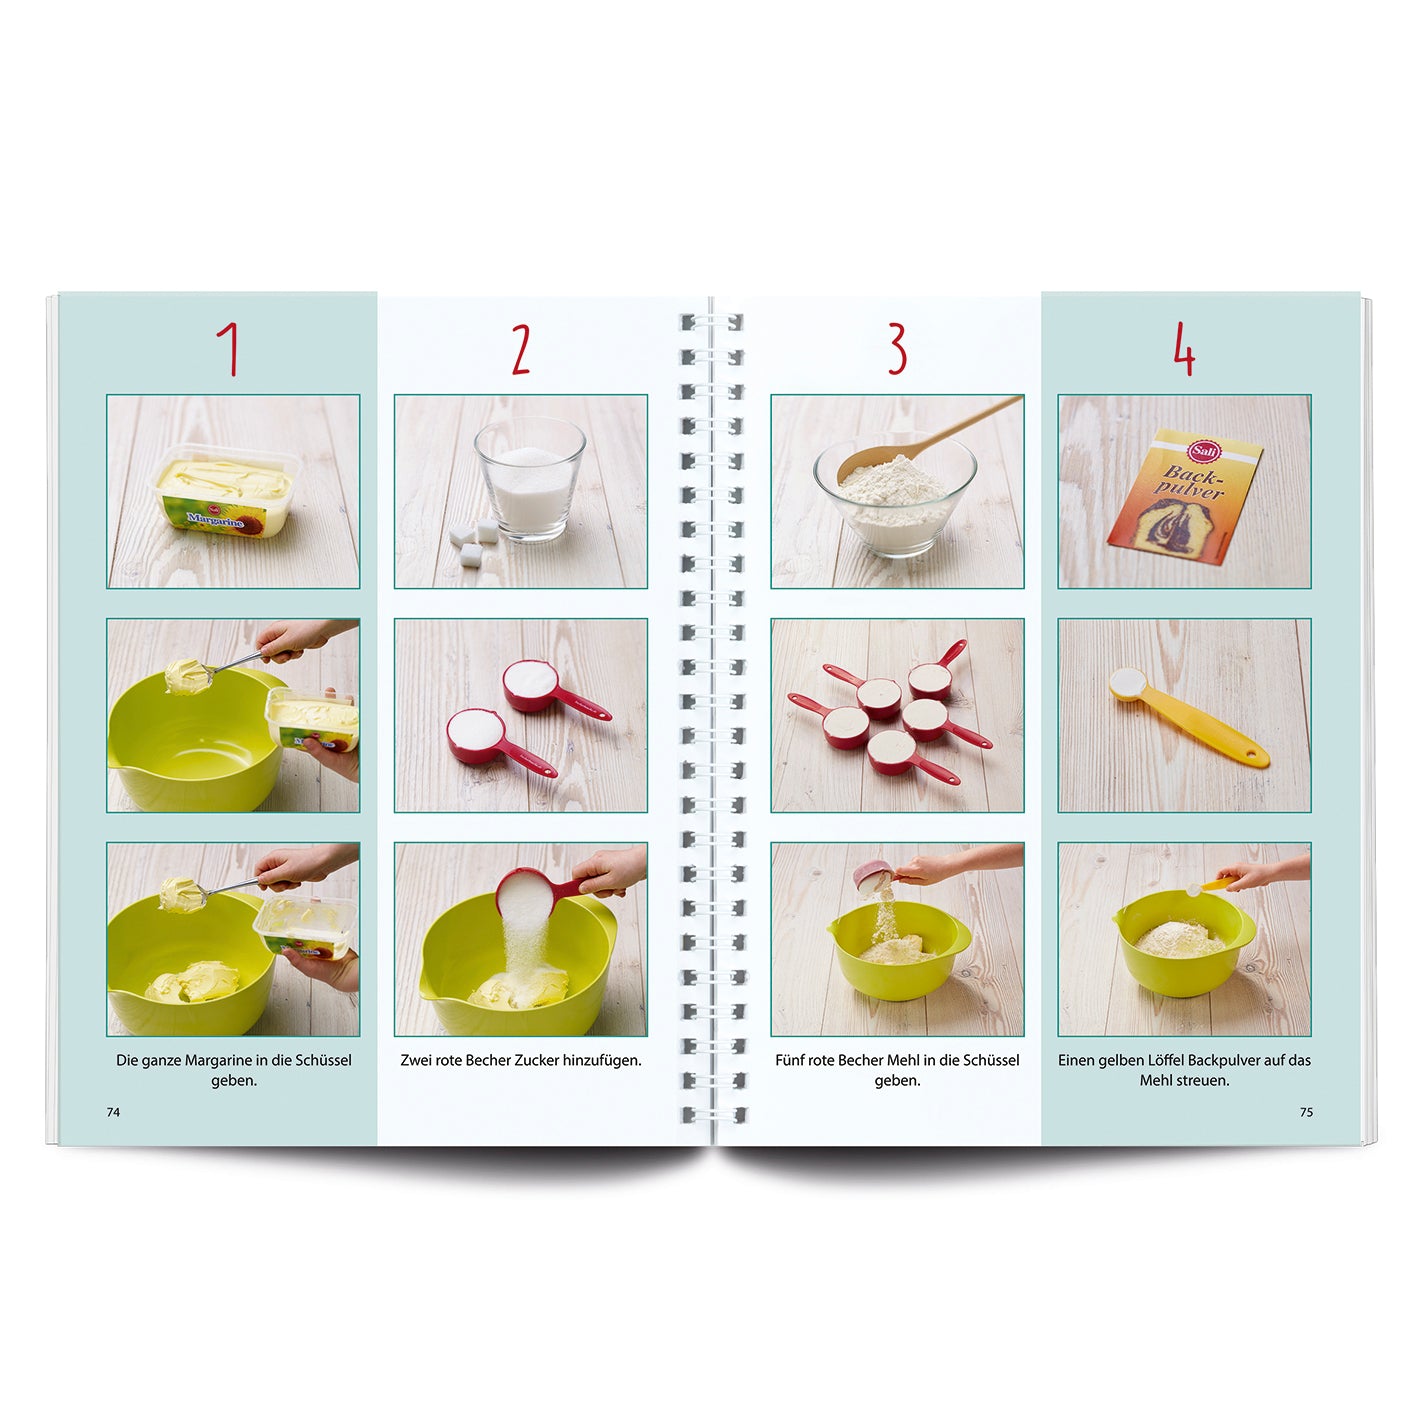 Rezeptbuch (Ergänzungsexemplar ohne Messbecher) Band 3 - Plätzchen, Kekse, Cookies & Co.